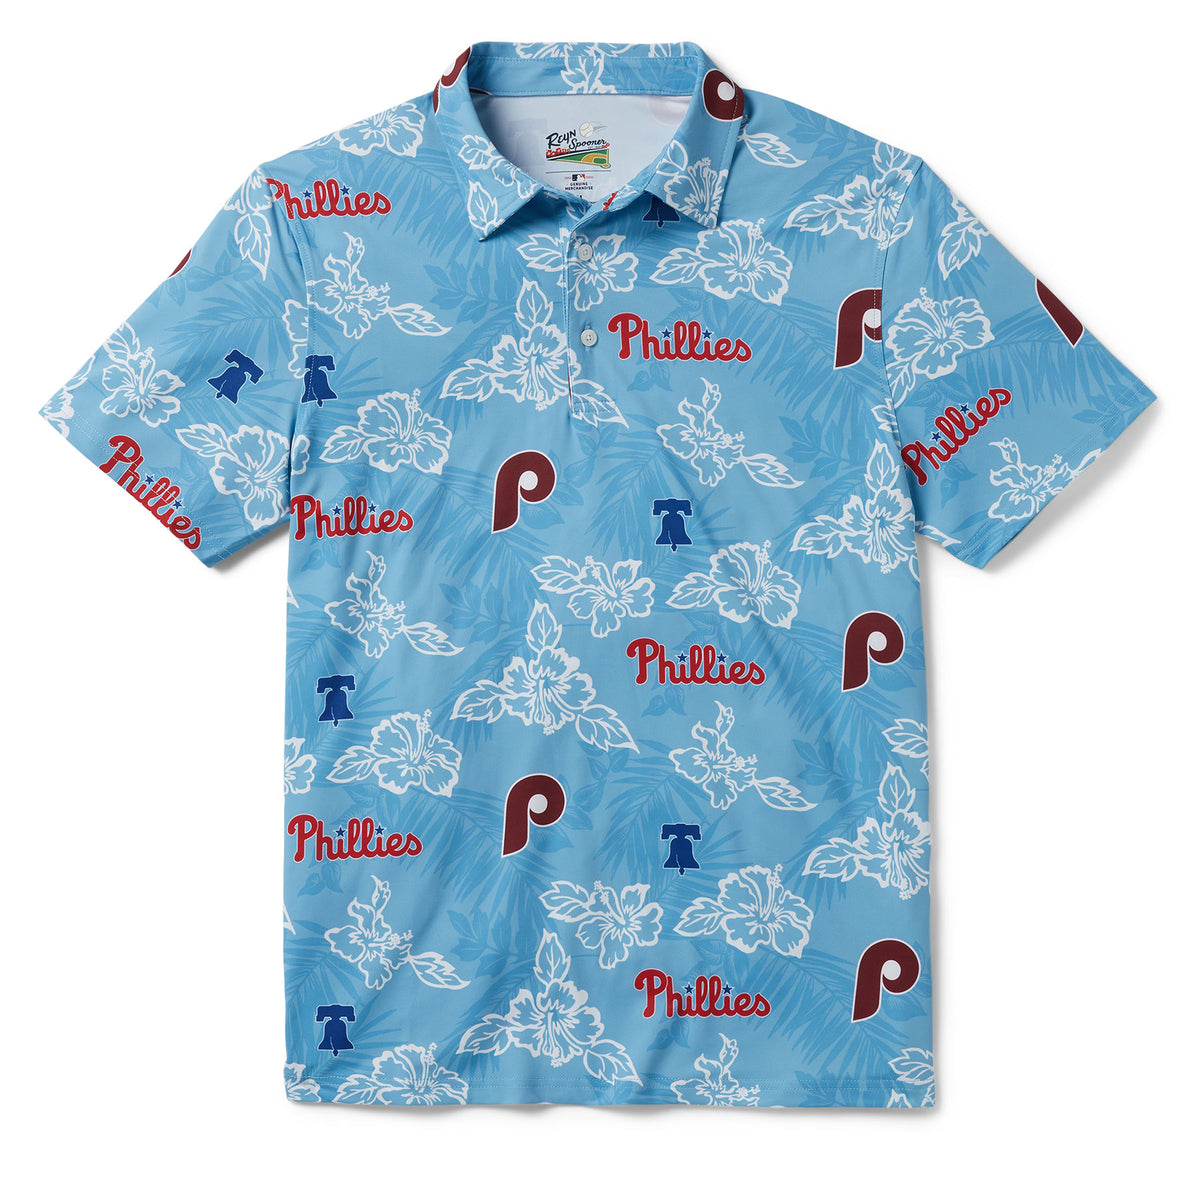 Reyn Spooner Men's Light Blue Philadelphia Phillies Performance Polo Shirt  - Macy's